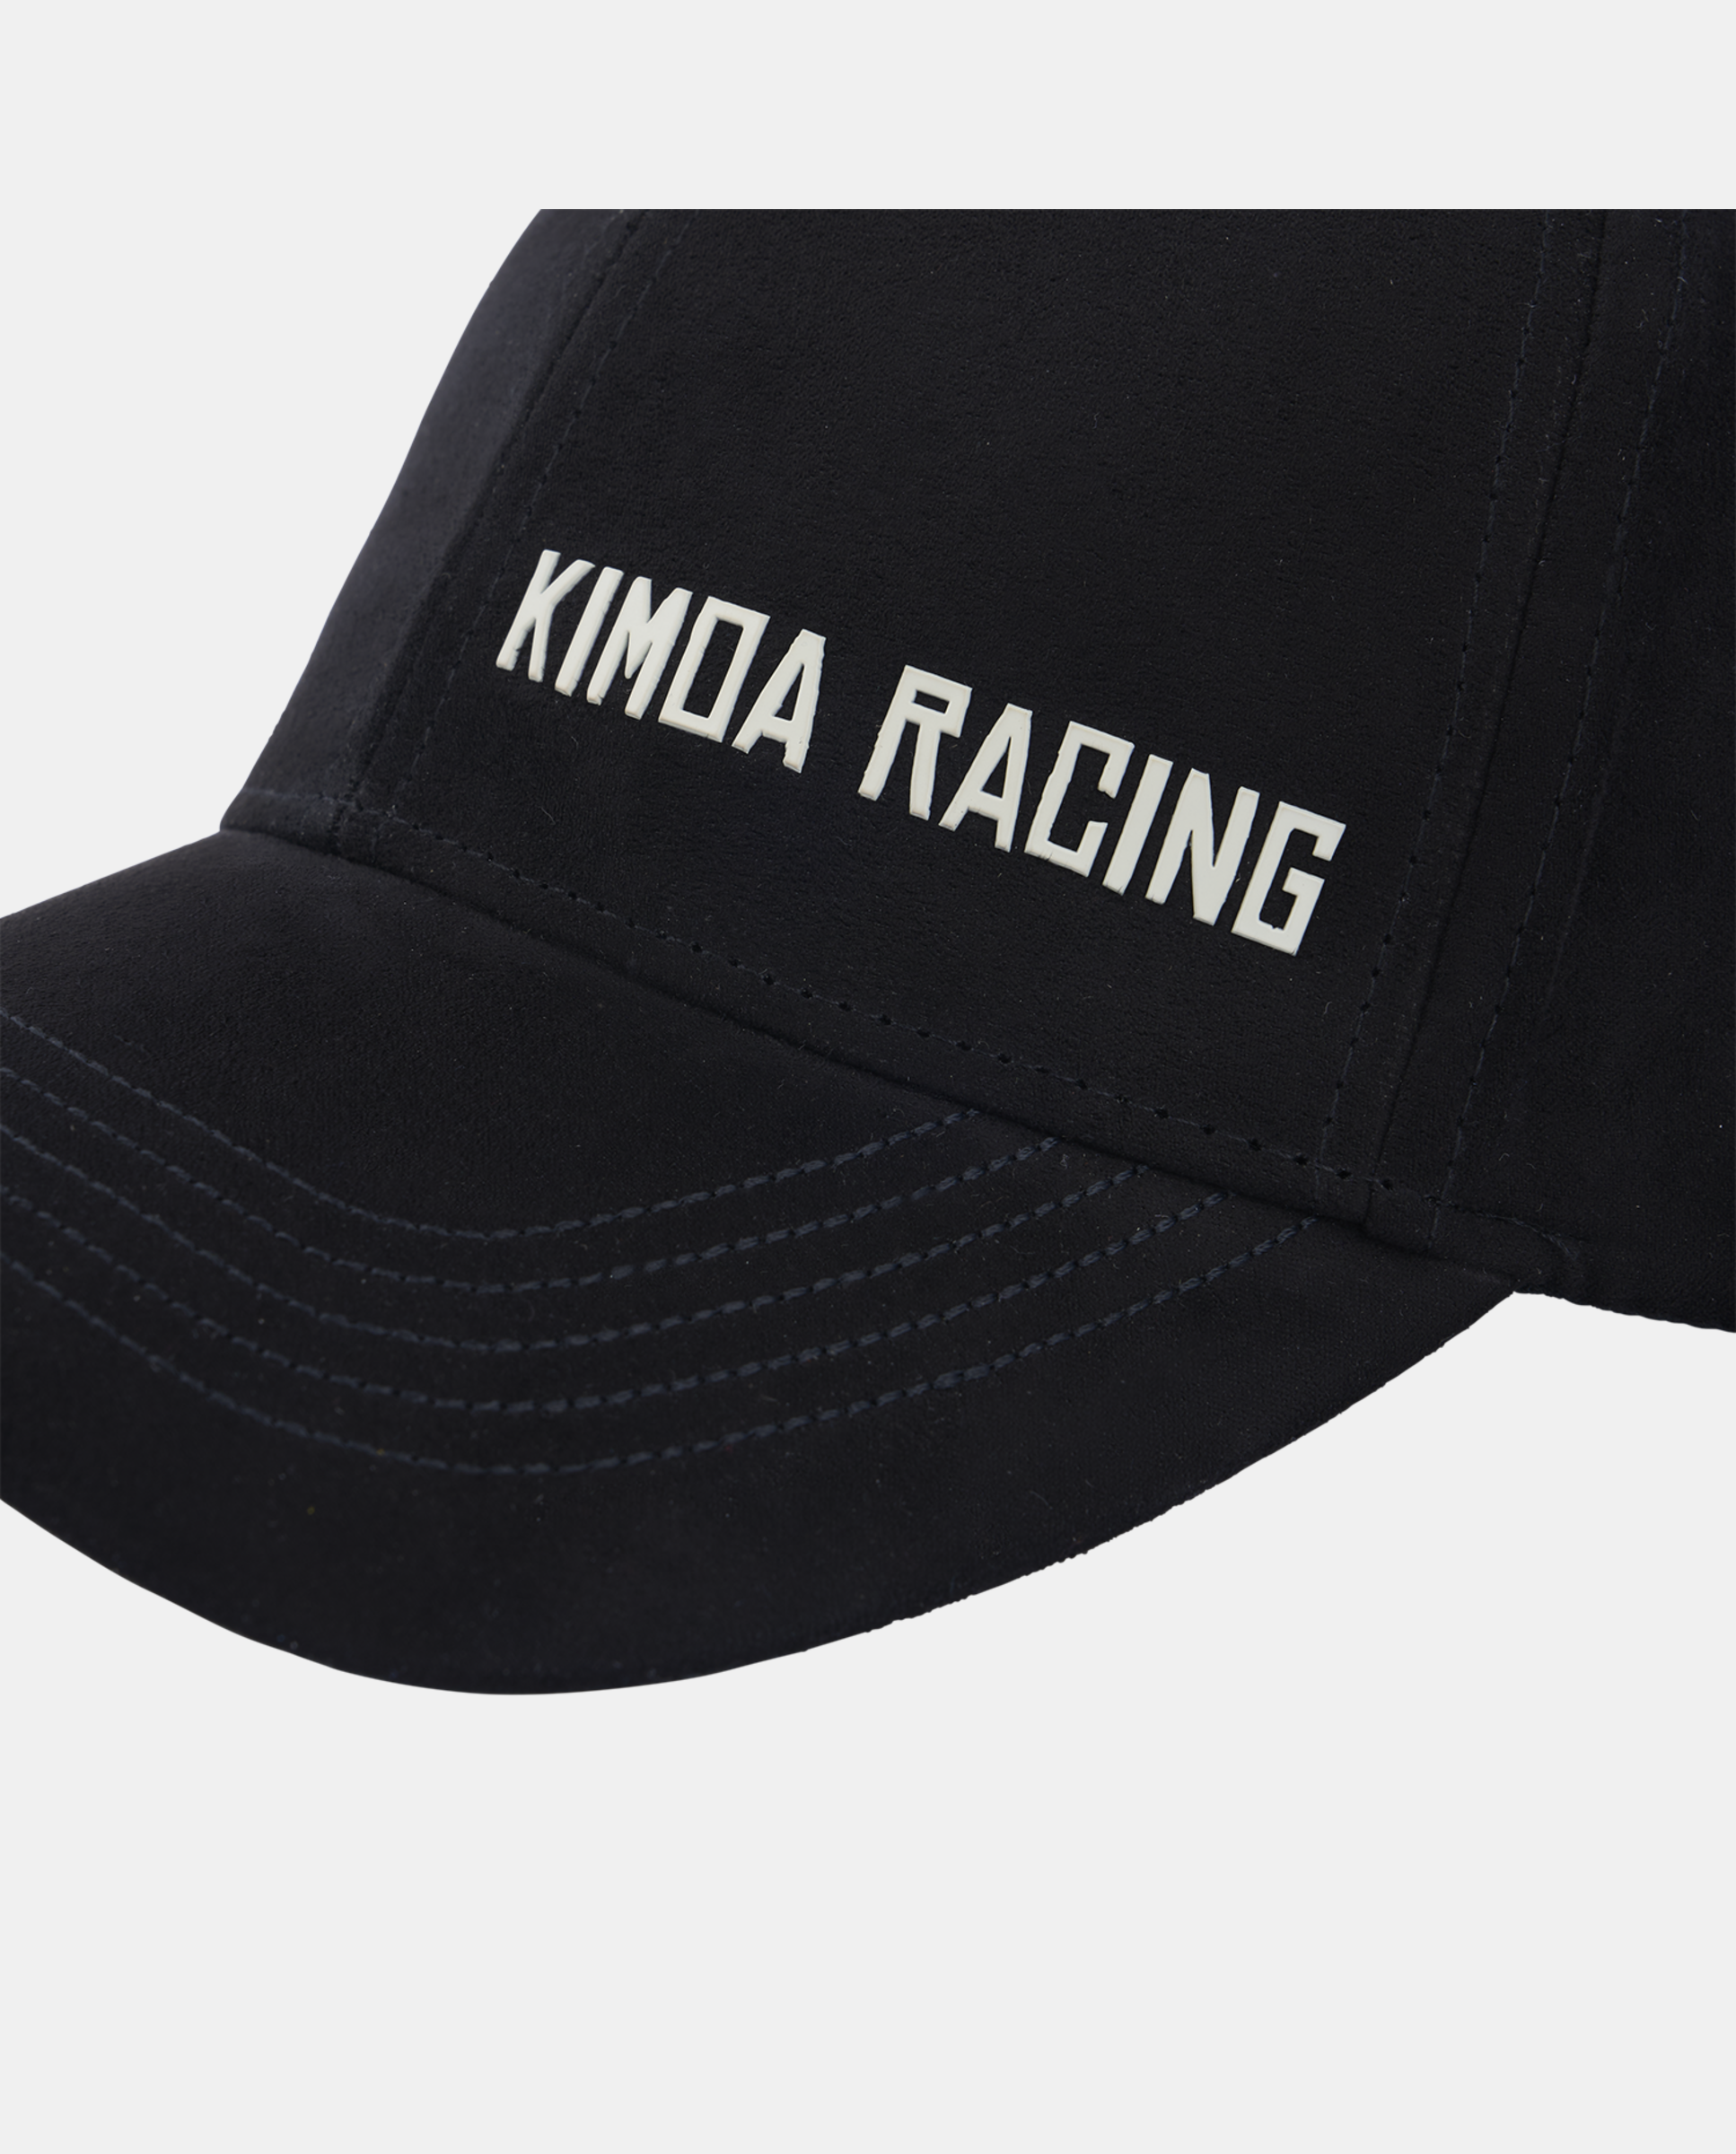 Racing Shift Black Cap